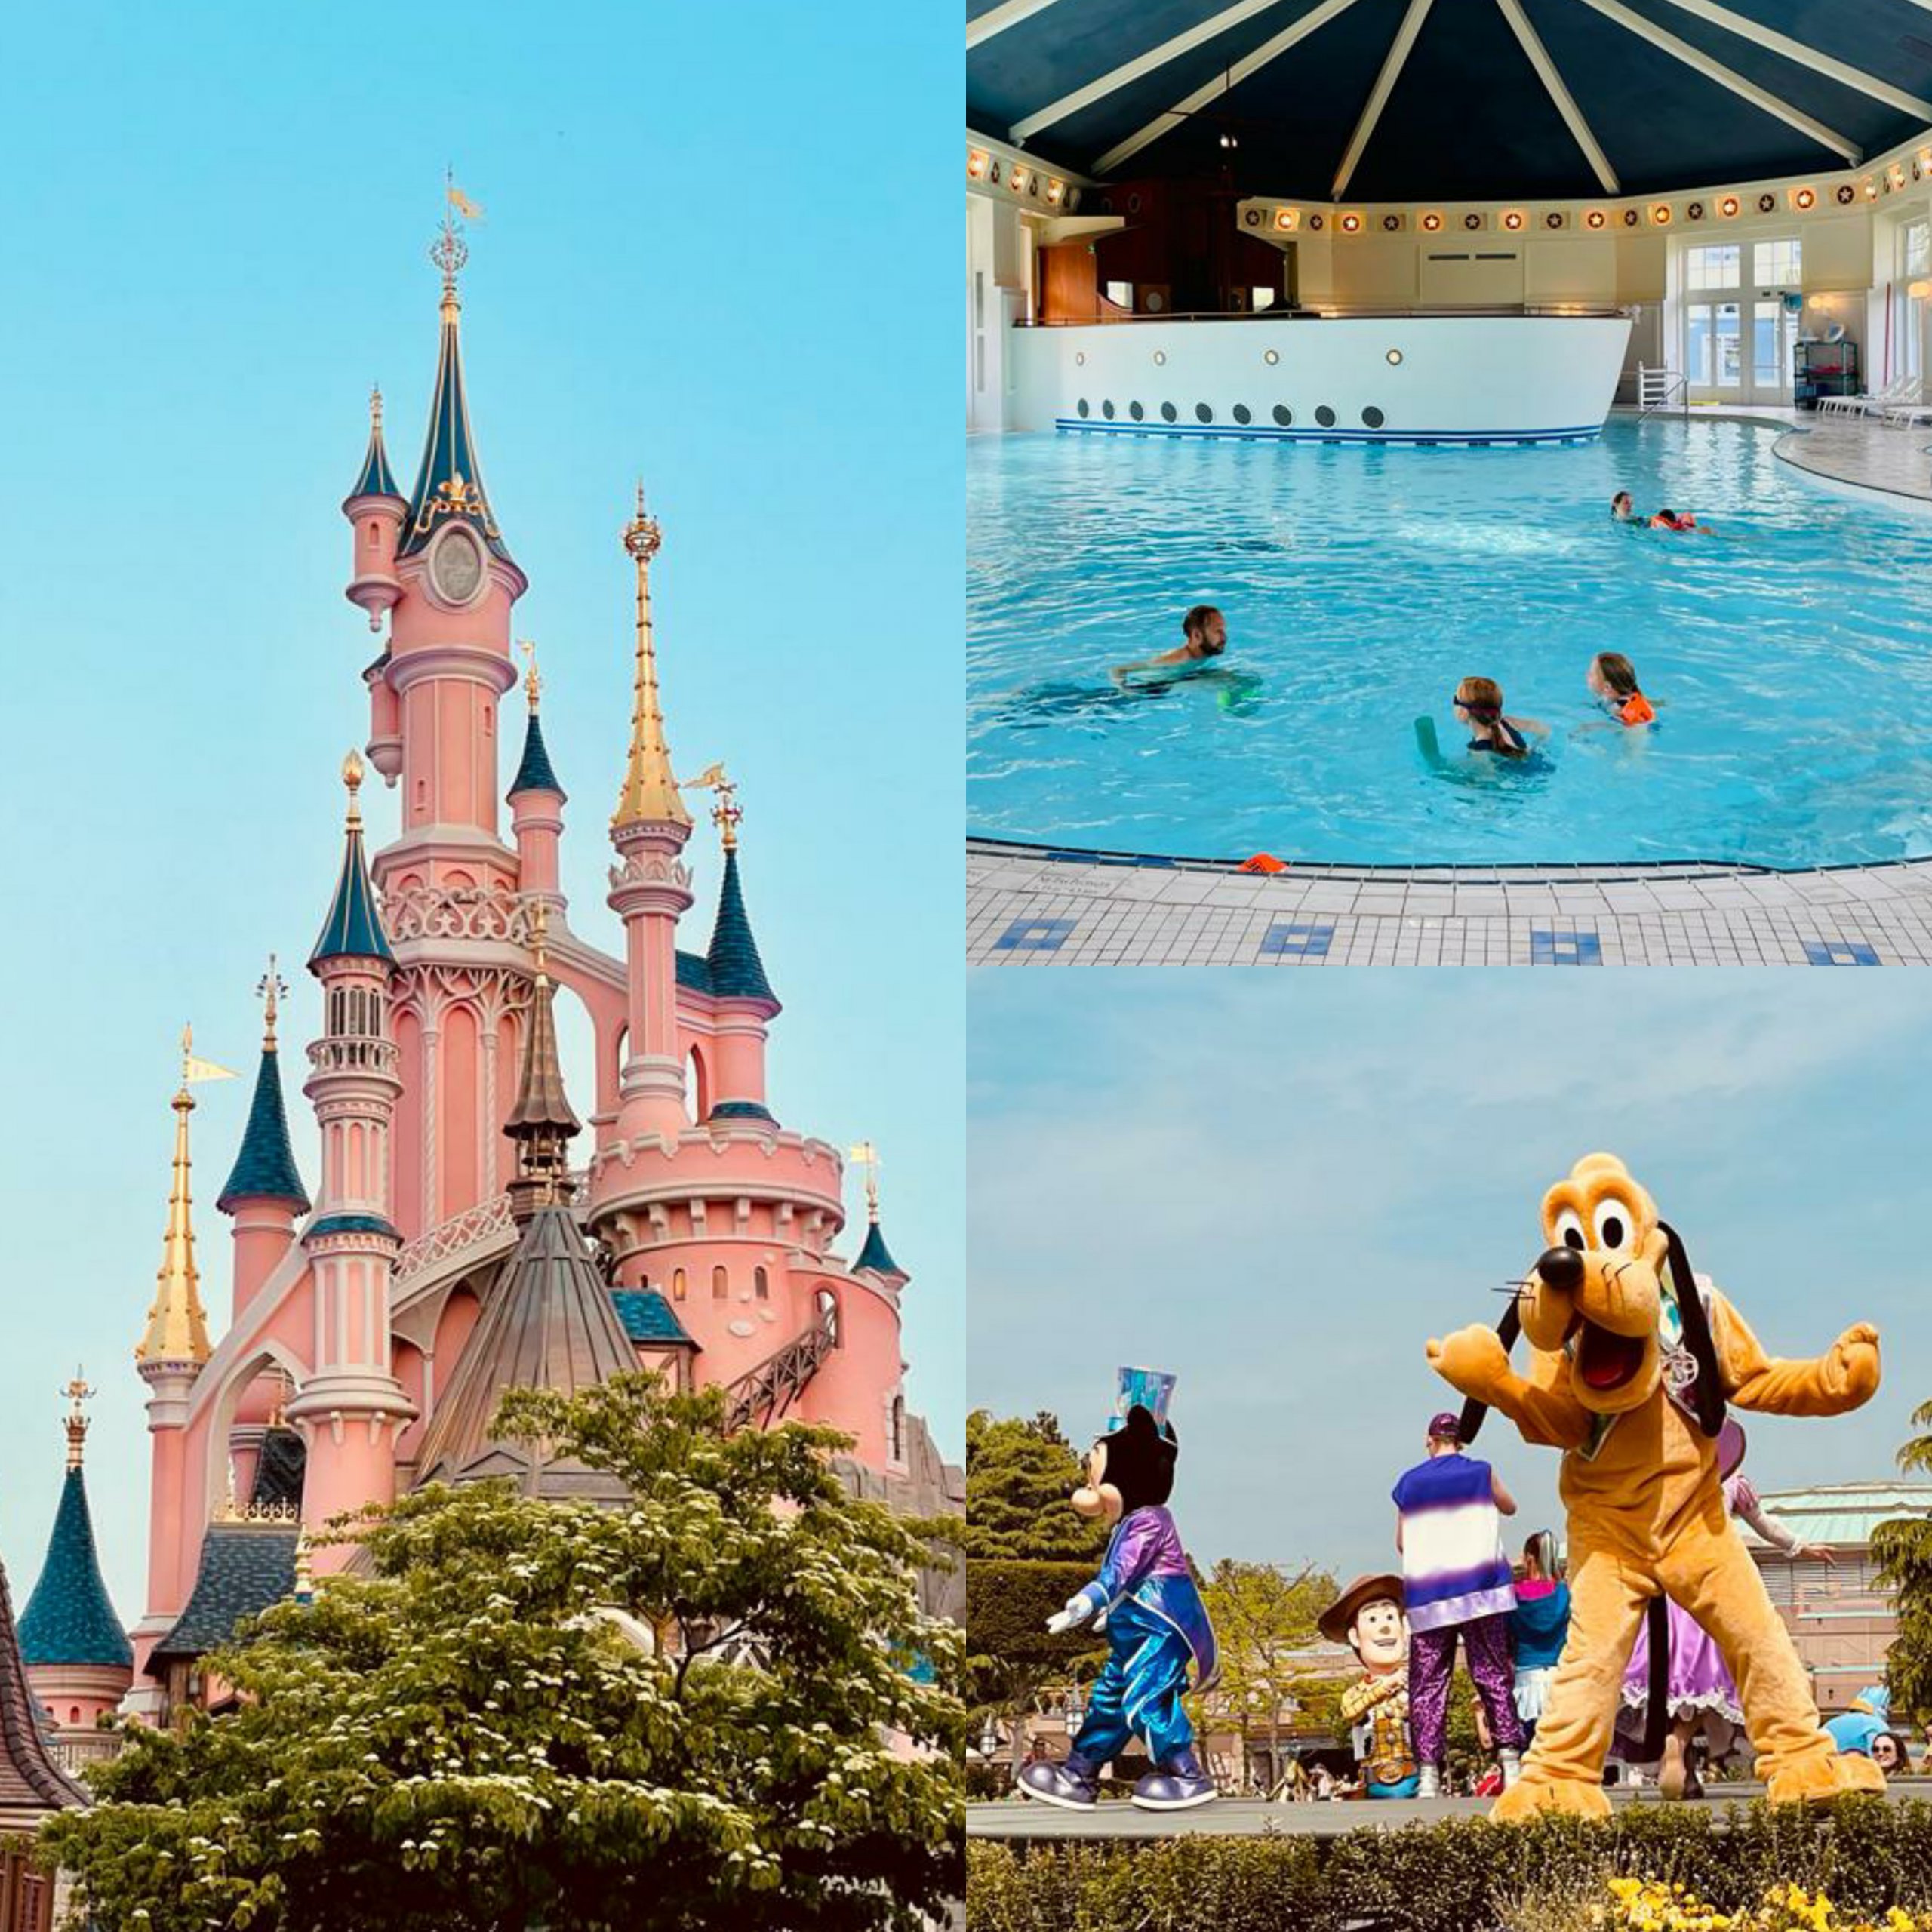 Overnachten op doorreis in Frankrijk: hotels, campings en huisjes. Disneyland Parijs ligt voor veel vakantiebestemmingen onderweg. Je kunt hier een hotel of resort boeken, in combinatie met tickets. Maar er zijn ook campings in de buurt.